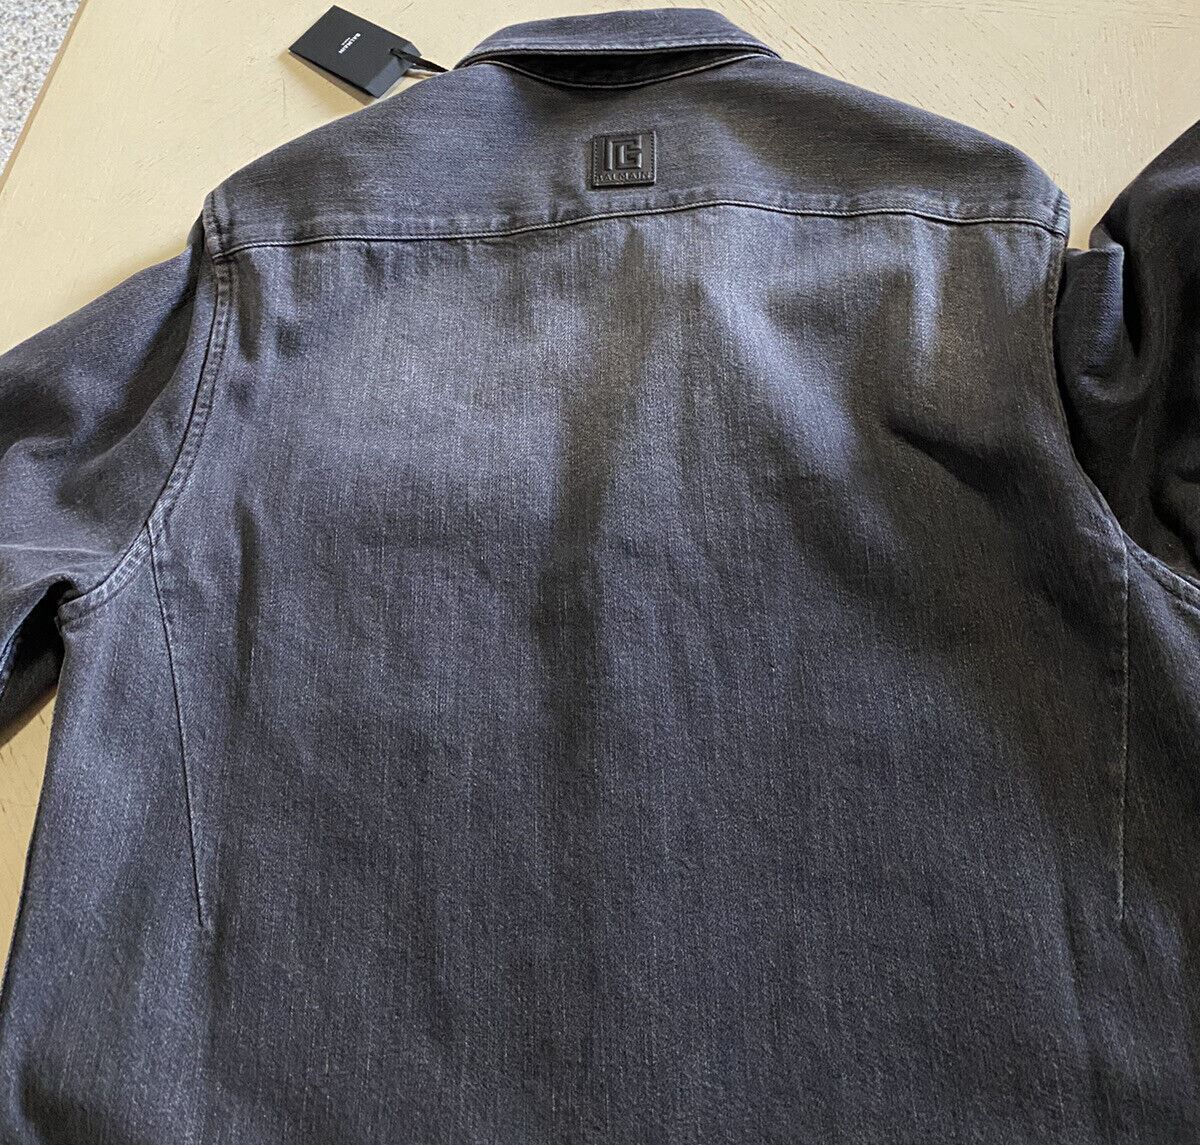 СЗТ $1395 Balmain Мужская спортивная джинсовая рубашка с необработанным краем, черная 40/15,5 (M)